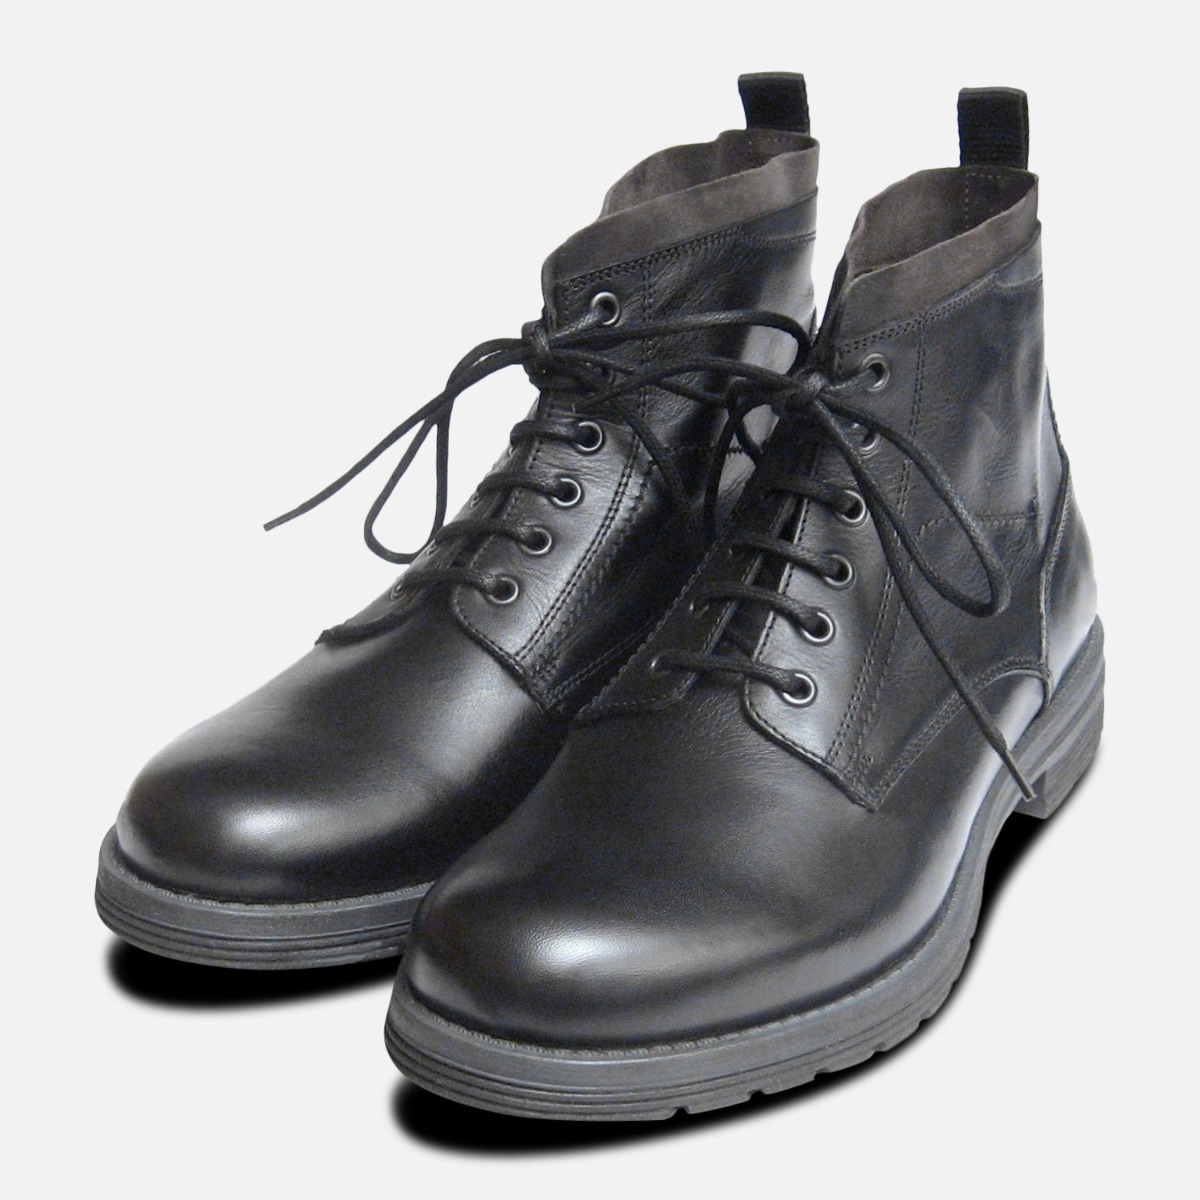 Designer Italian Mens Commando Boots in Black Calf Leather | eBay